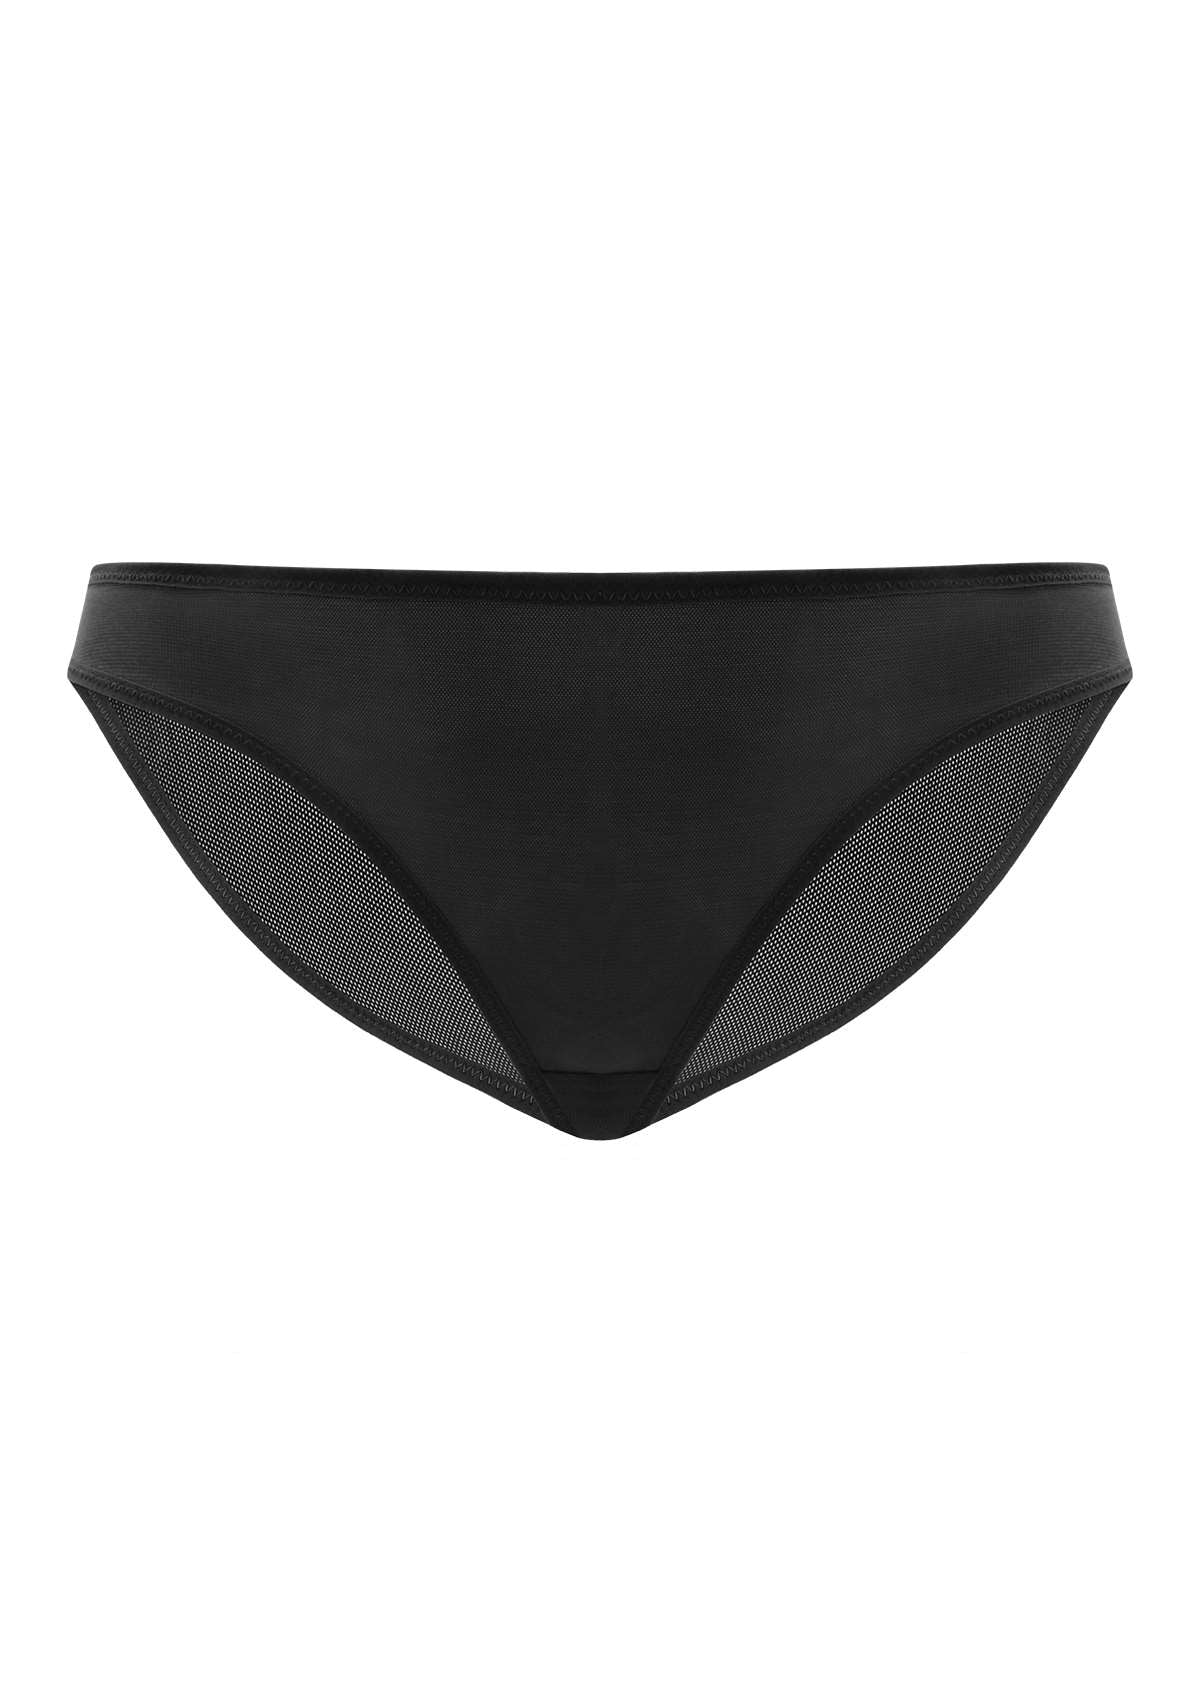 HSIA Billie Smooth Sheer Mesh Lightweight Soft Comfy Bikini Underwear - M / Black